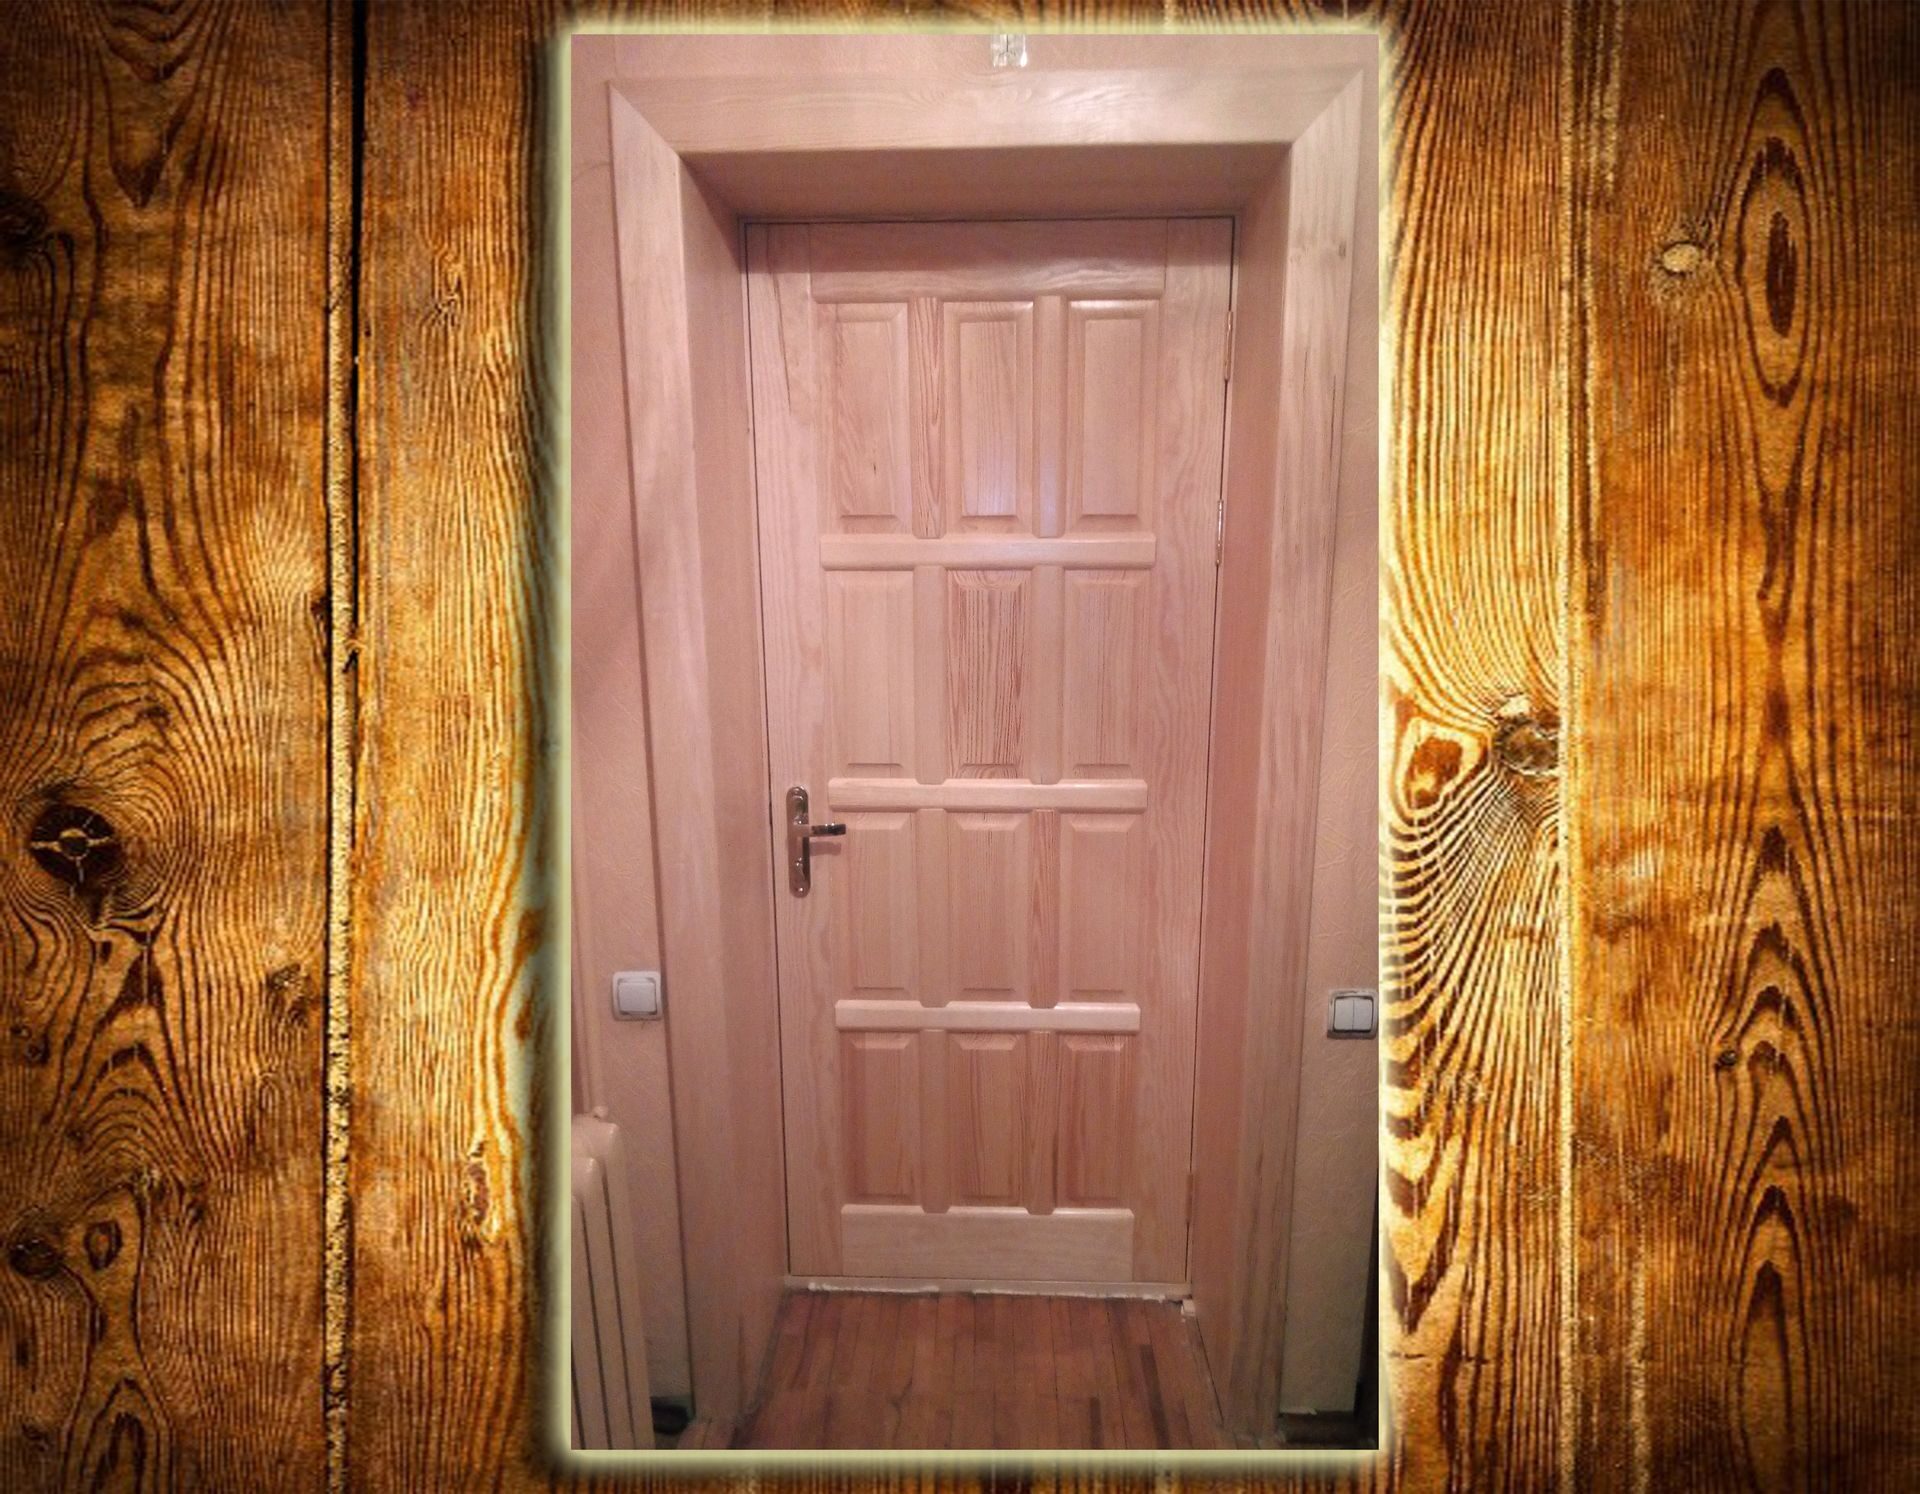  покрыть дверь лаком:  правильно покрыть лаком деревянную дверь .